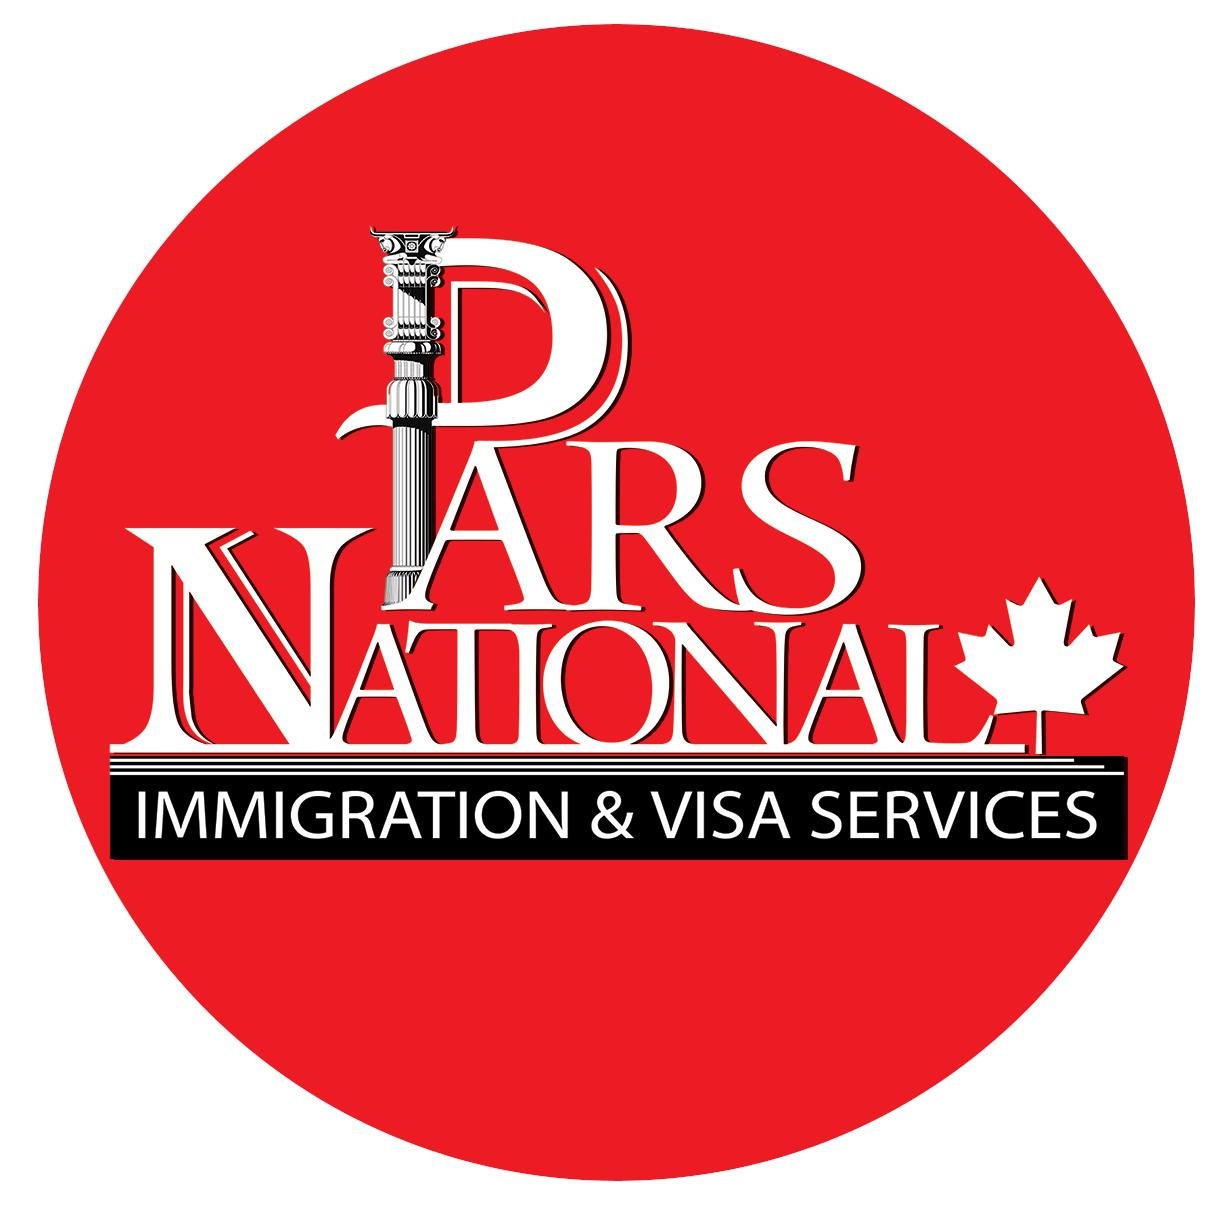 نامی آشنا و مورد اعتماد با بیش از 20 سال تجربه موفق در امور  خدمات ویزا و مهاجرت به کانادا